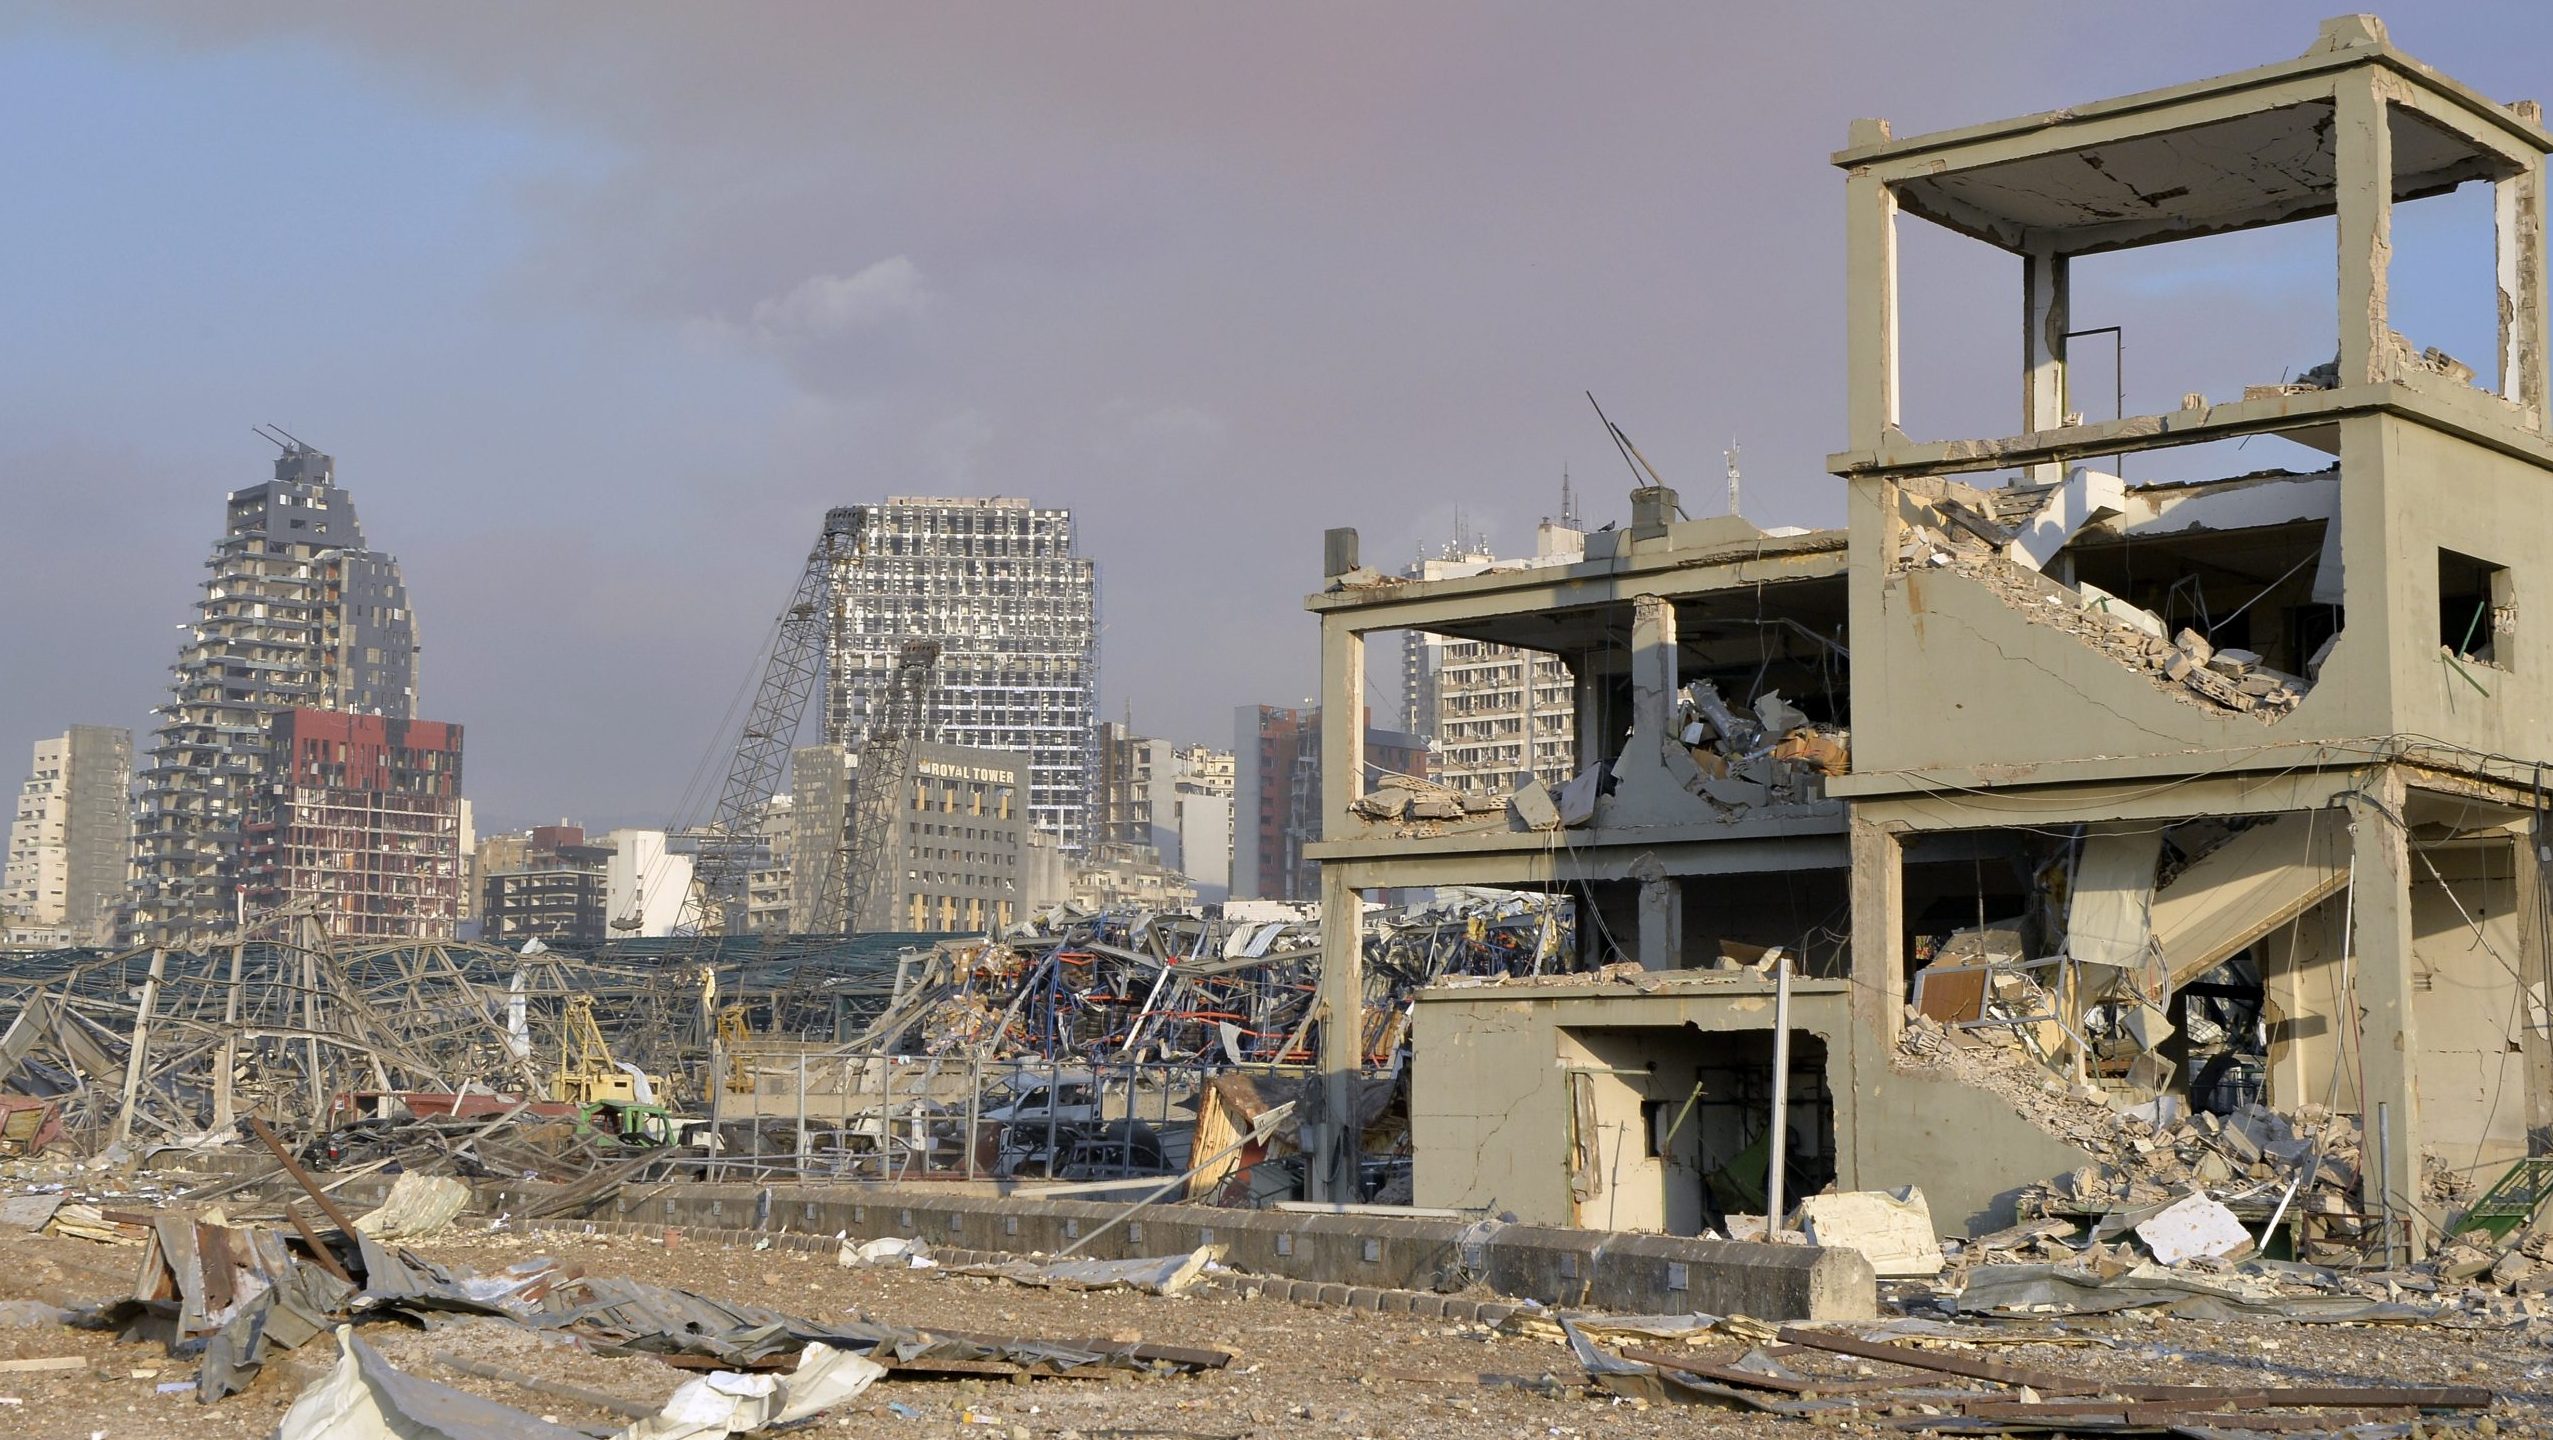 Lebanese confront devastation after massive Beirut explosion - 680 ...